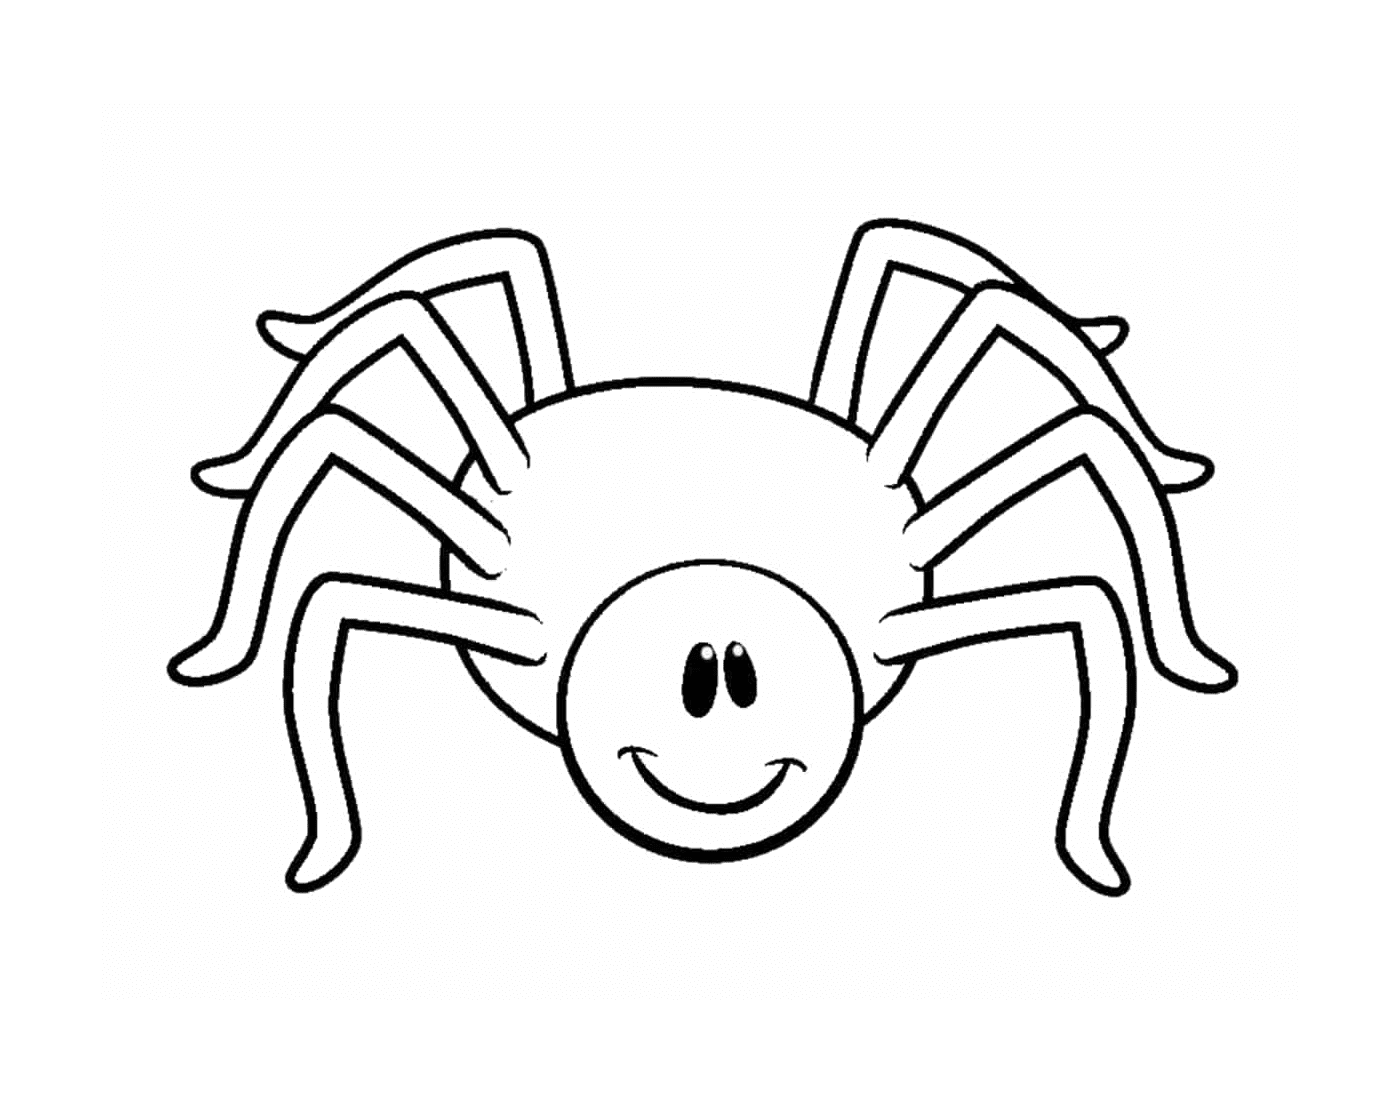  Eine lächelnde Spinne 